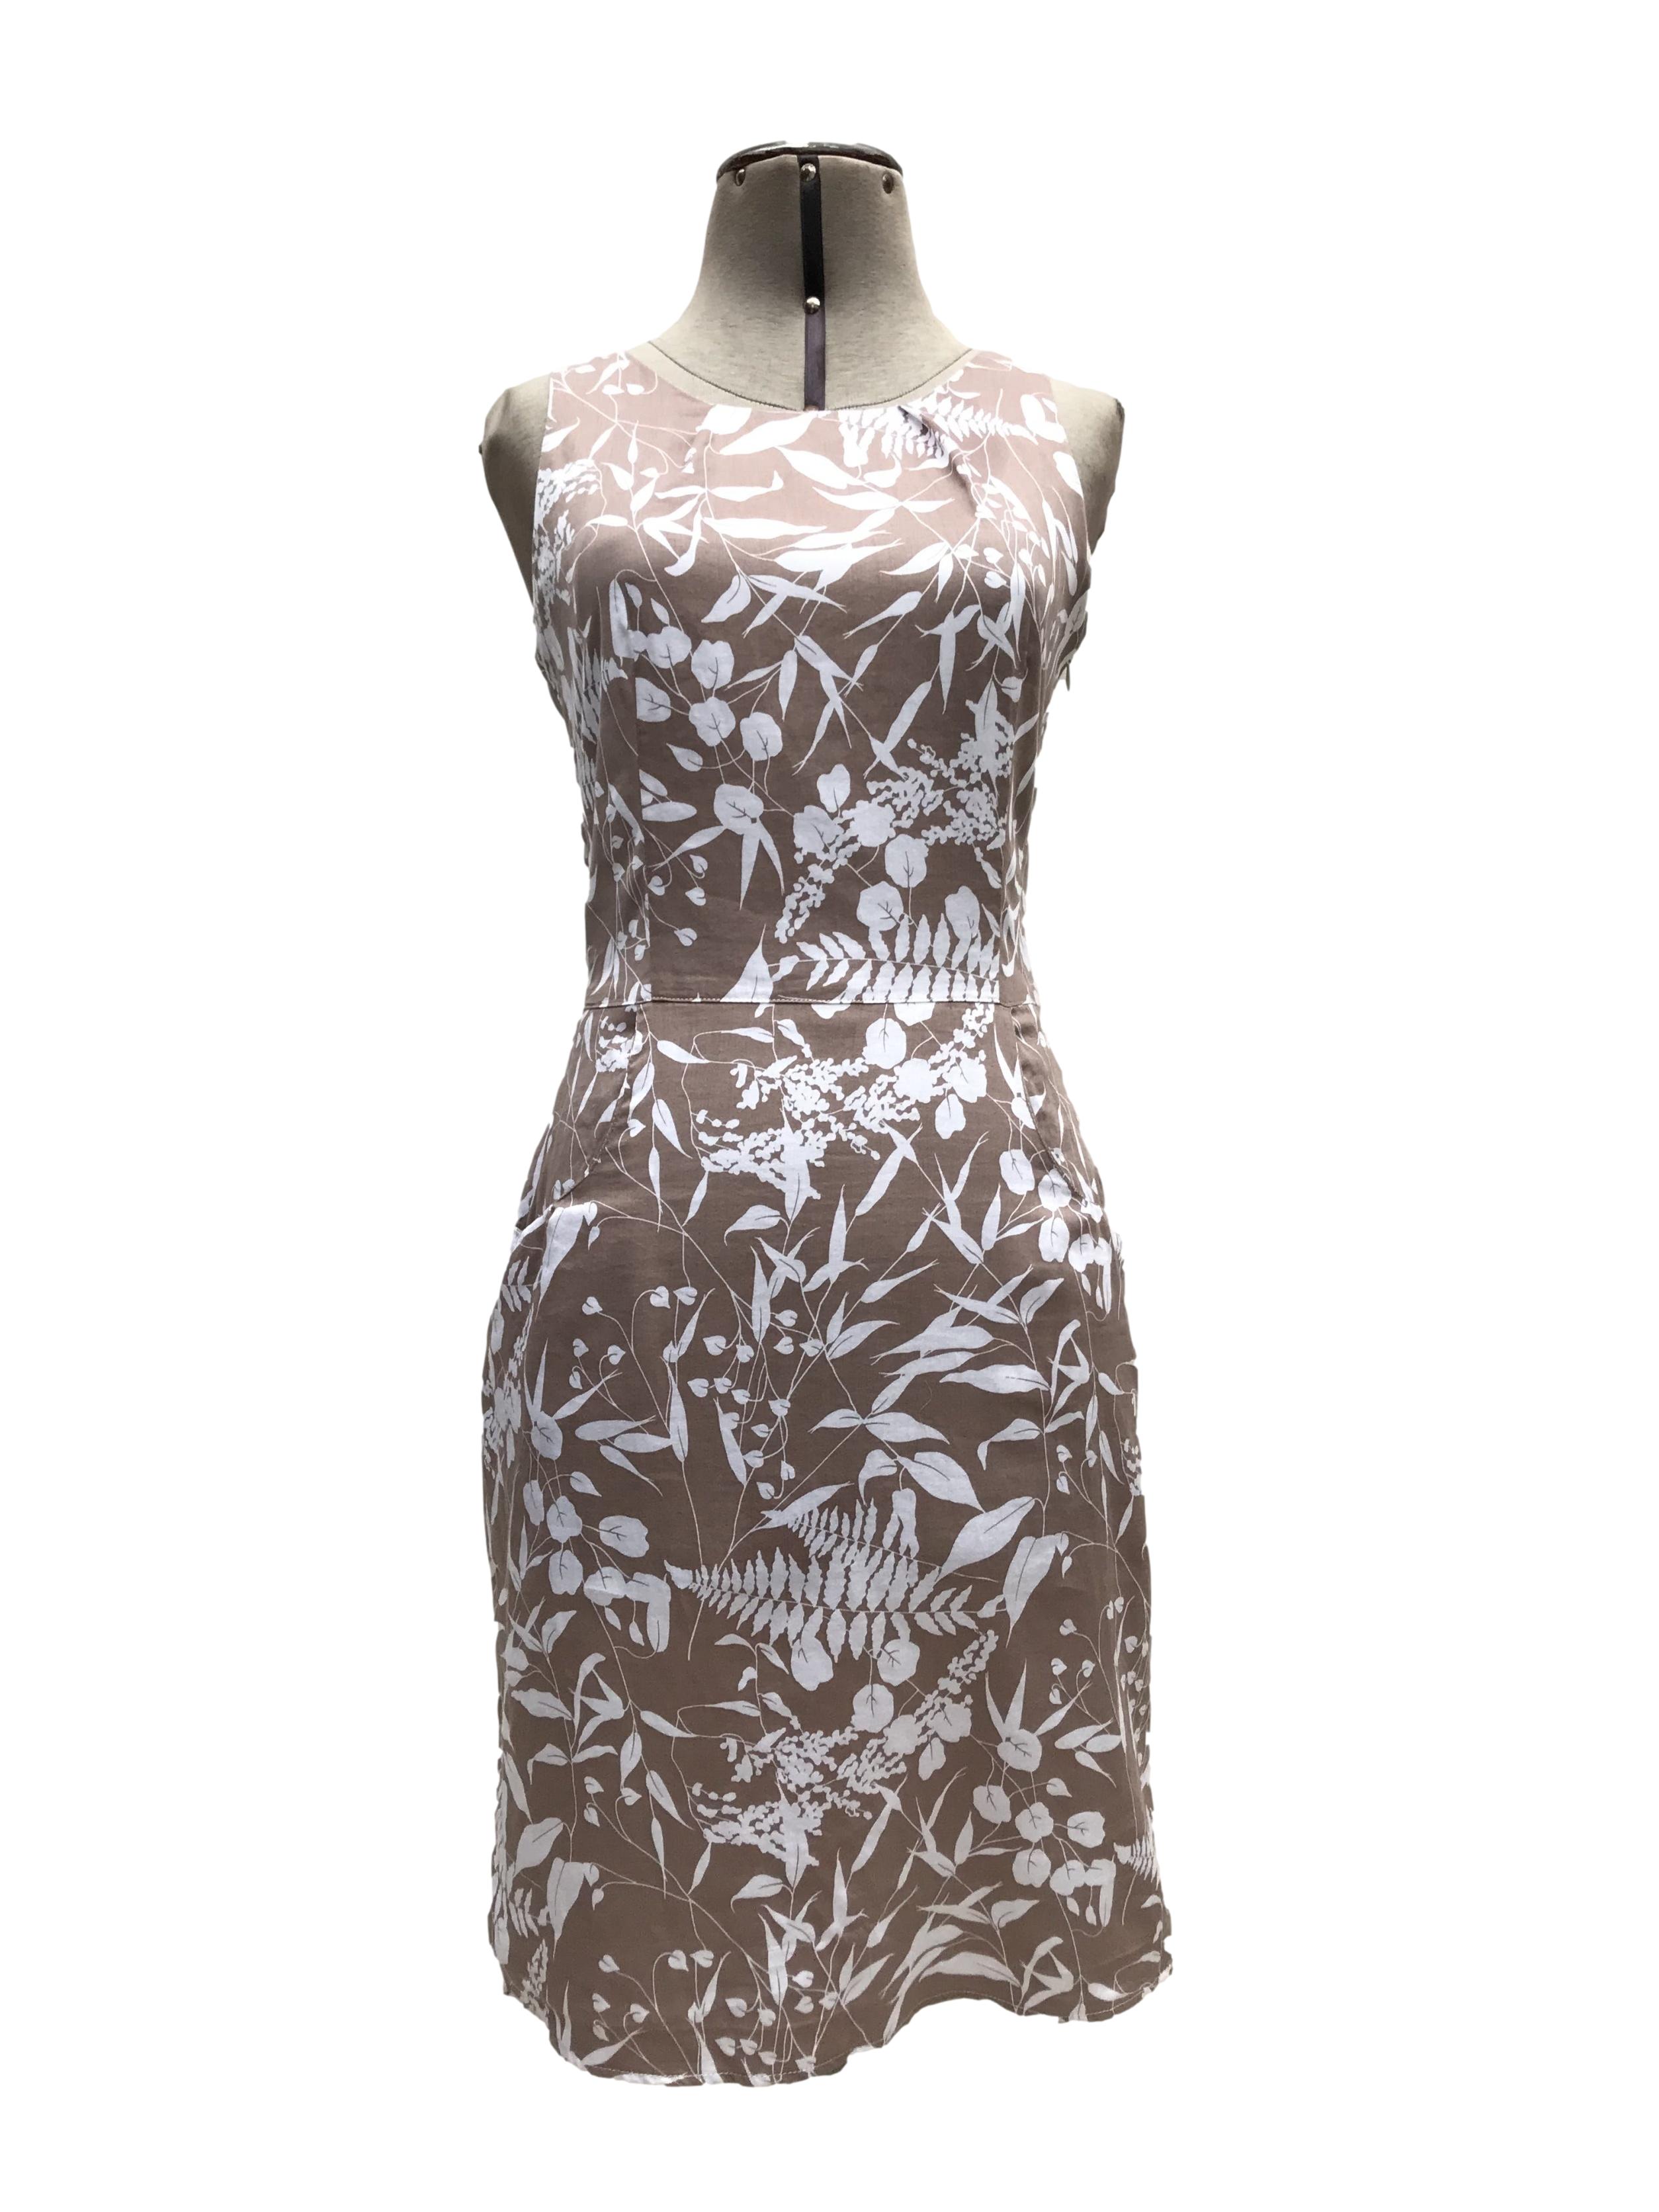 Vestido Moda&cia marrón claro con estampado de flores blancas, 97% algodón, forrado en el torso, botón posterior en el cuello, cierre lateral y bolsillos. Largo 91cm. Precio original S/ 250